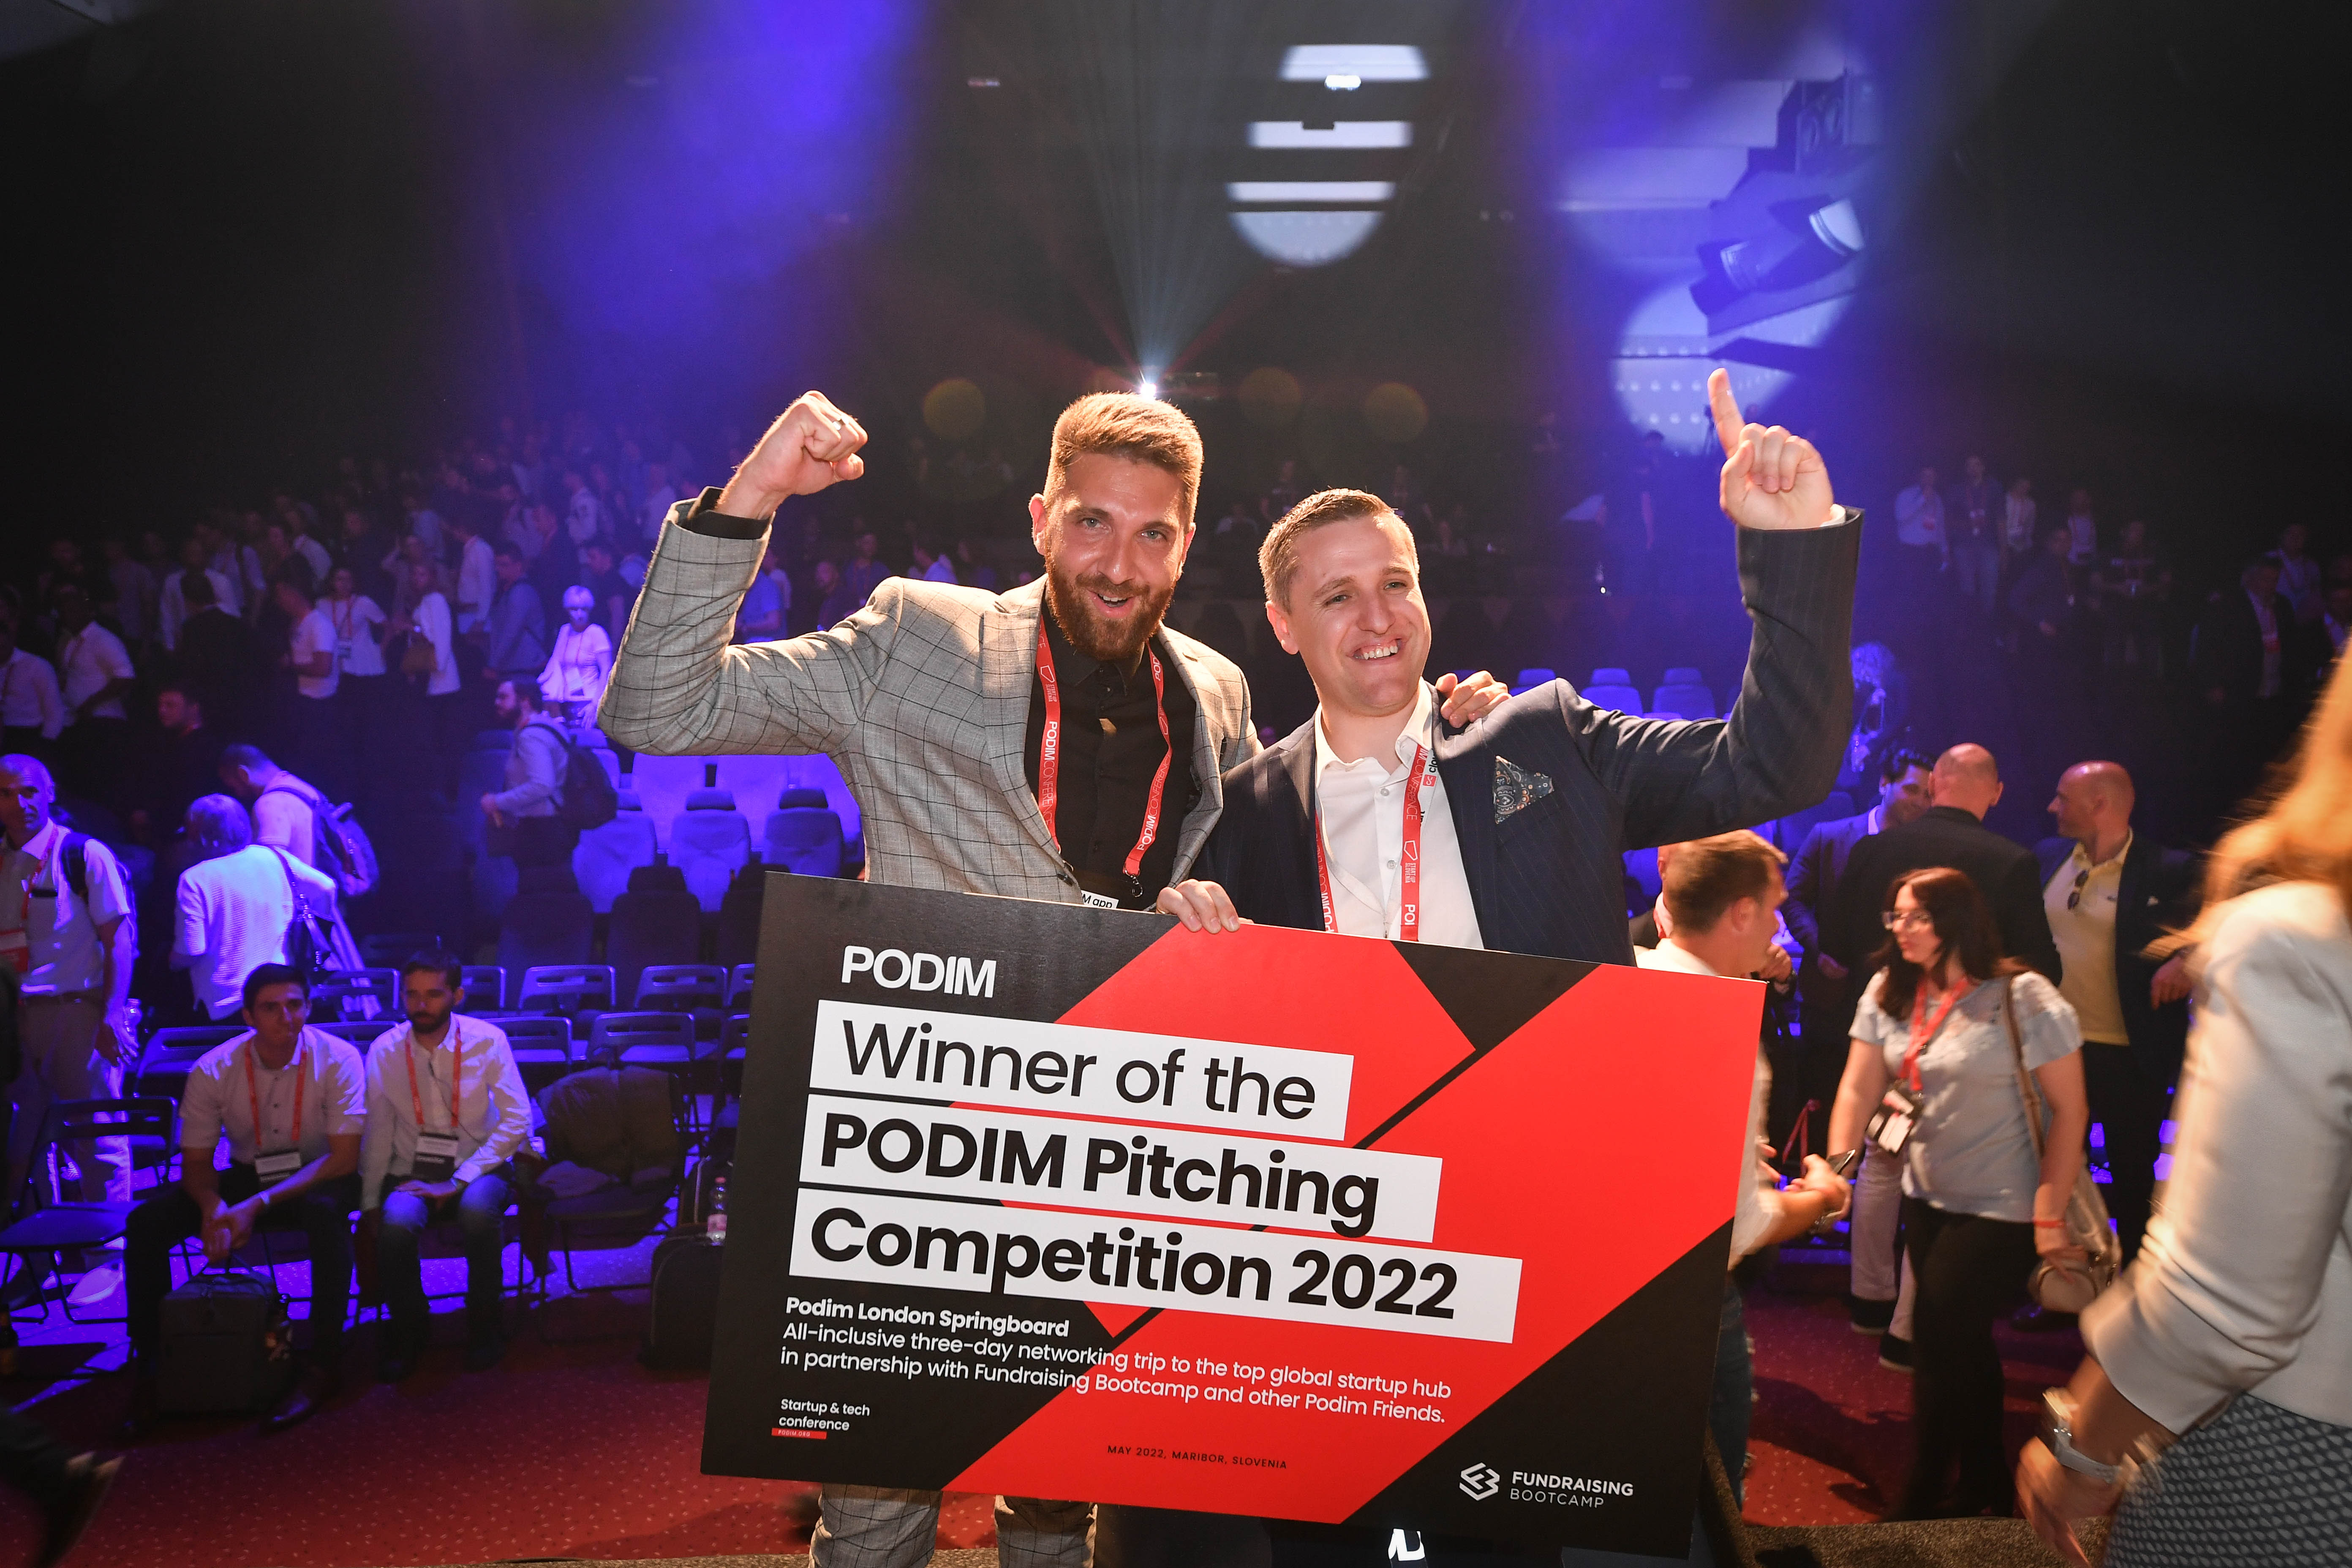 Zmagovalec Podim Pitching Competition 2022 je postal CloudCart iz Bolgarije